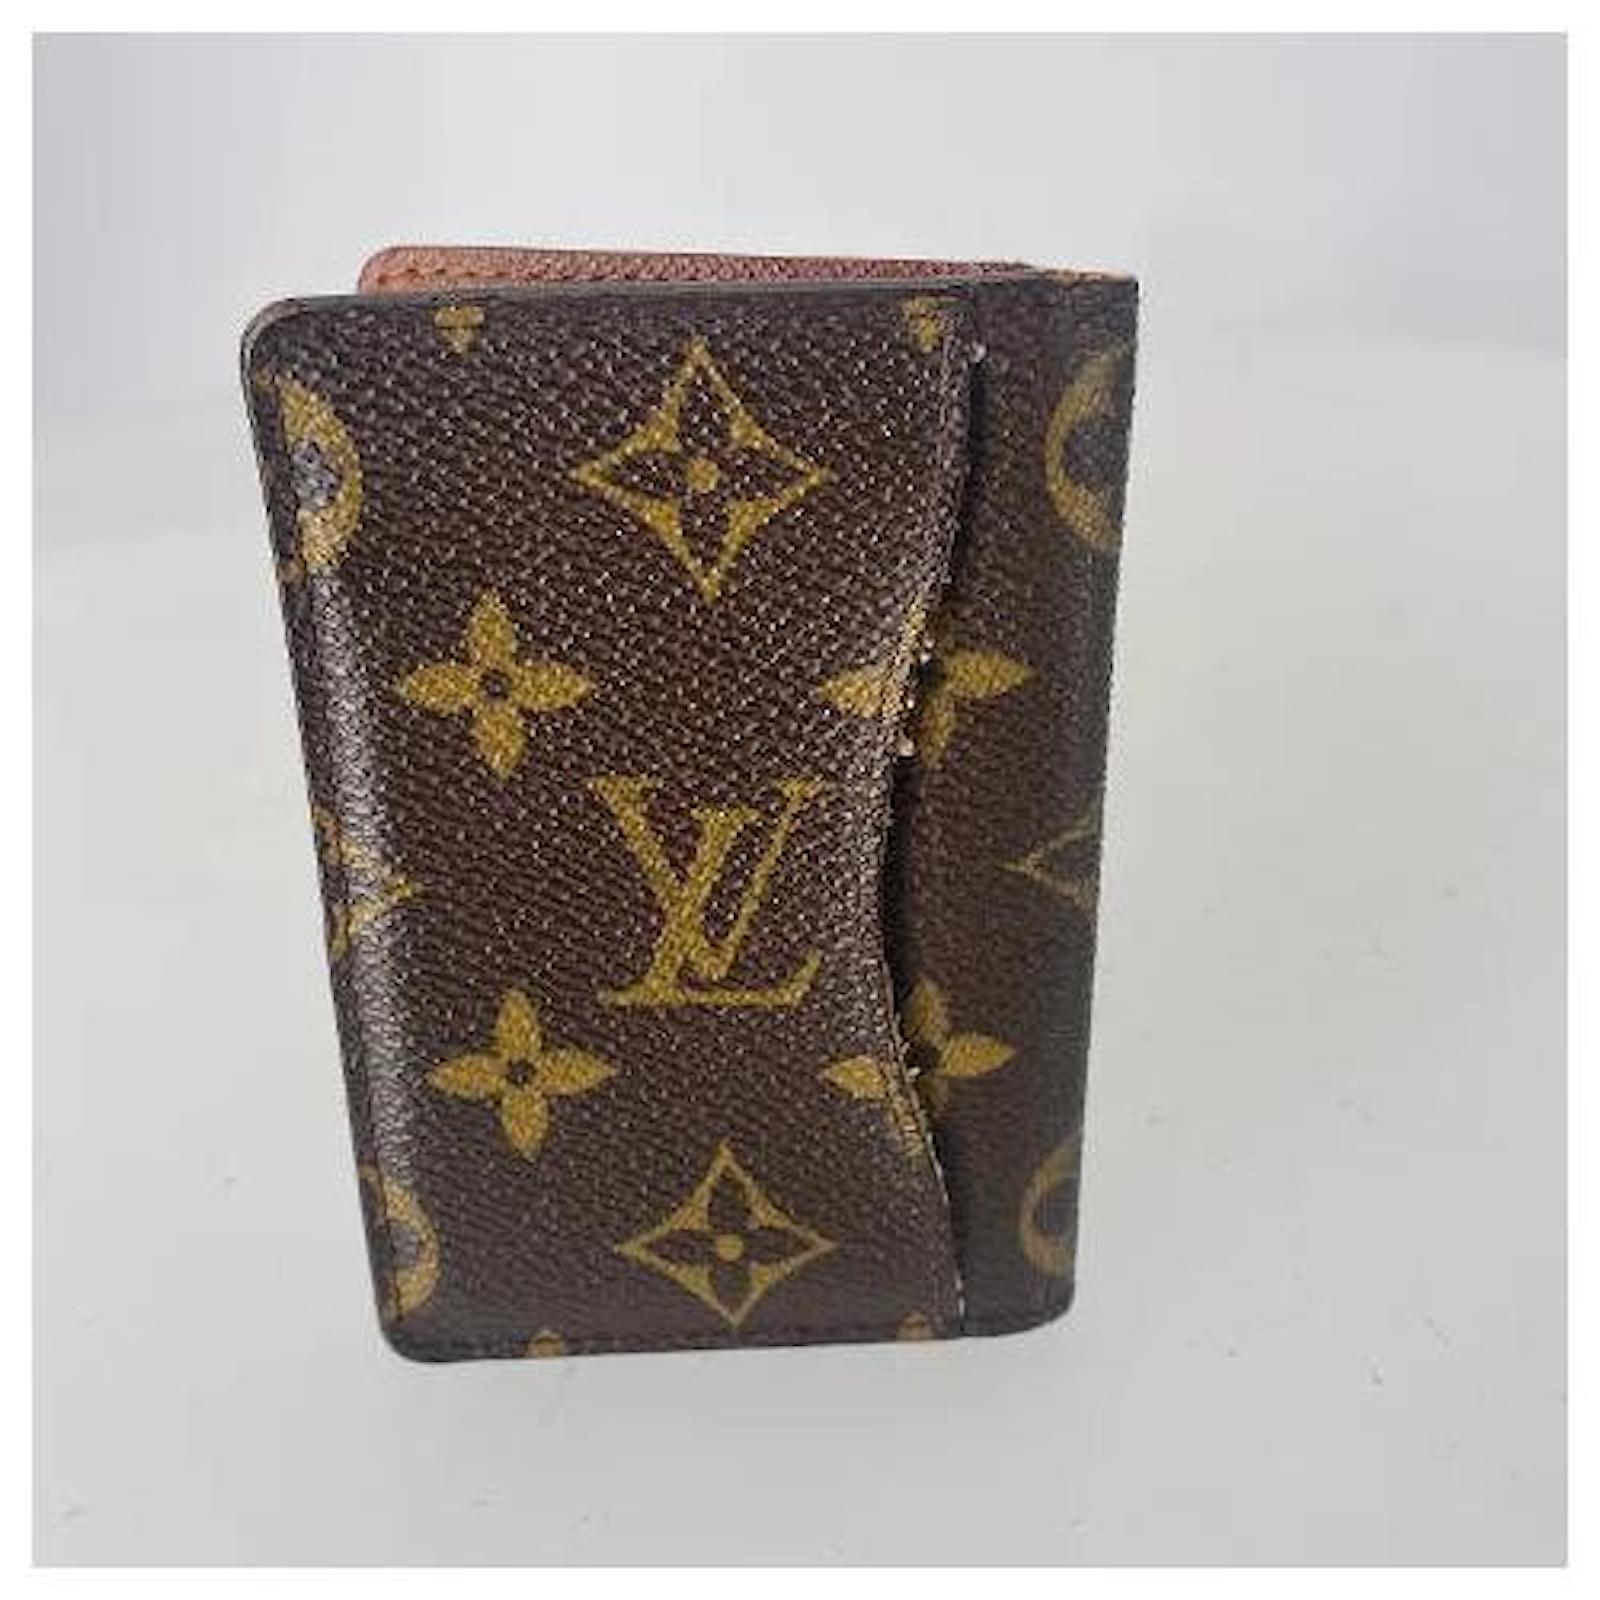 Louis Vuitton Kleinlederwaren aus Segeltuch - Braun - 31836824